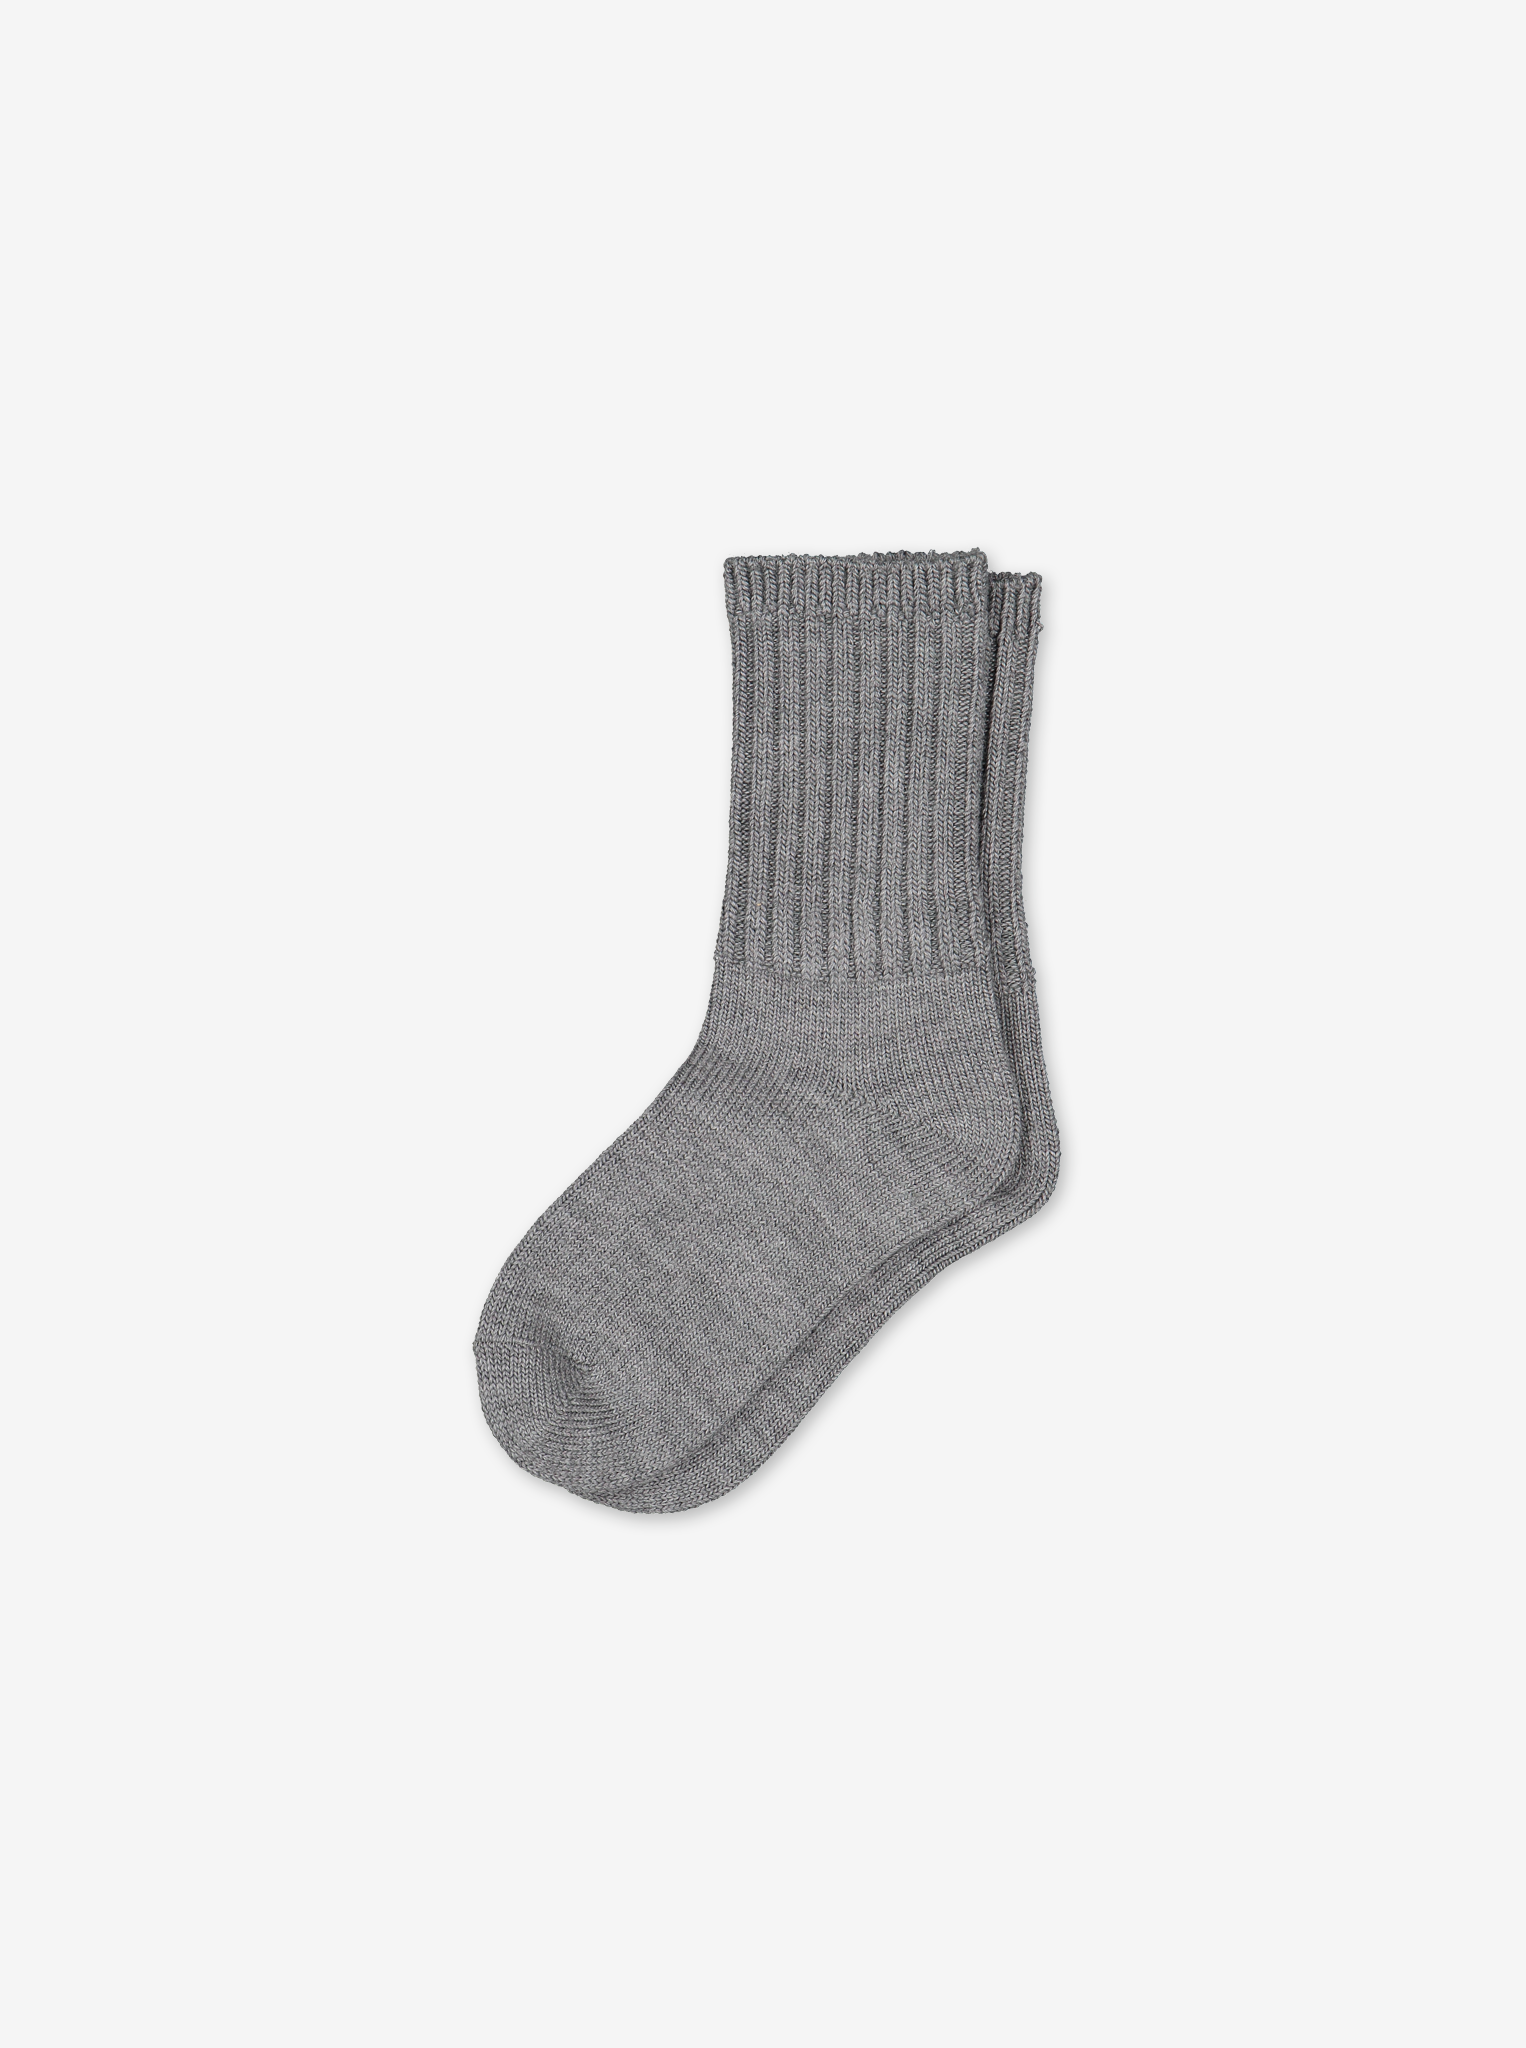 Thermal Merino Wool Kids Socks